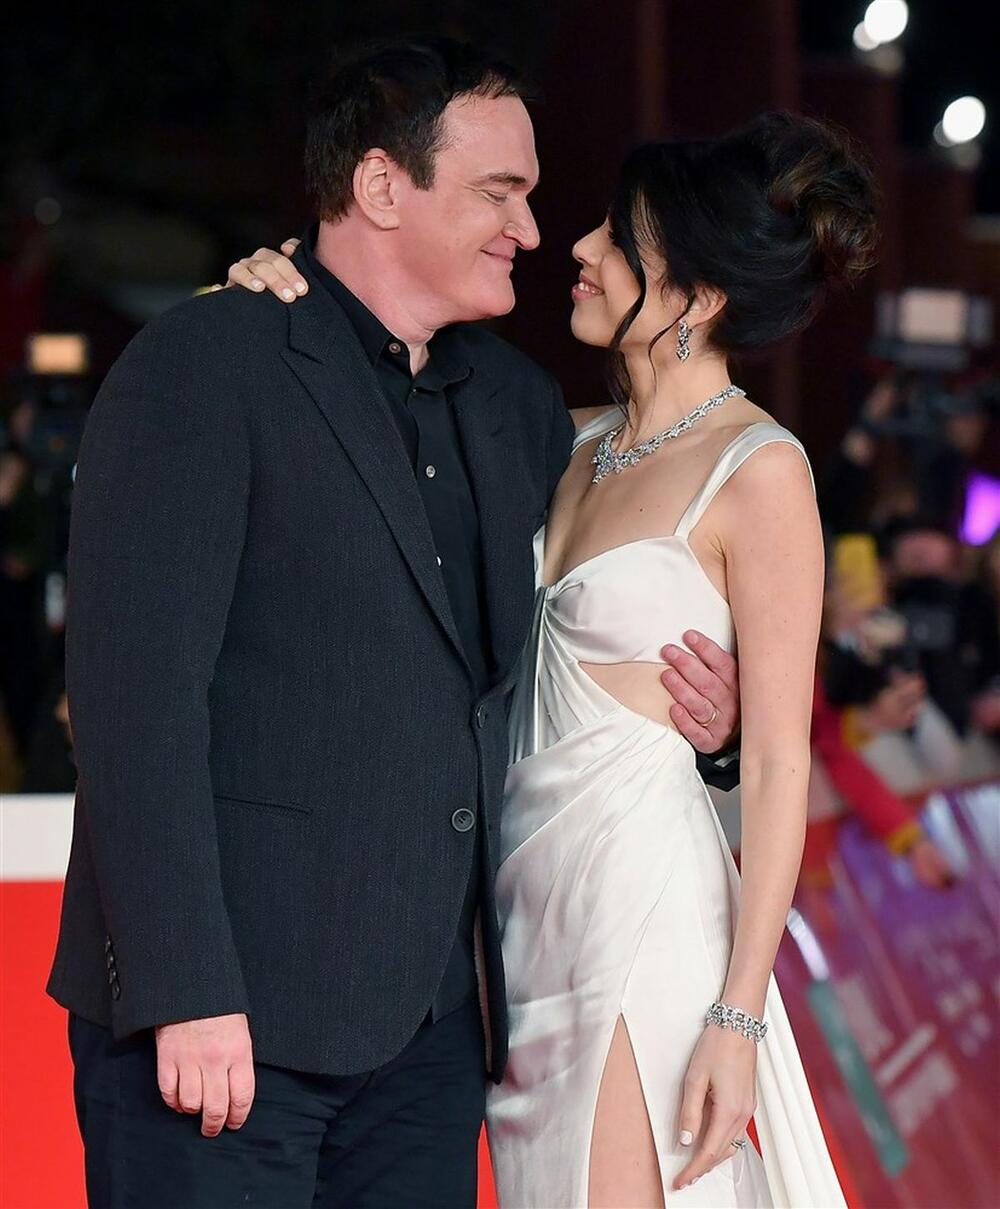 Kventin Tarantino i Danijela Pik upoznali su se 2009. godine u Izraelu